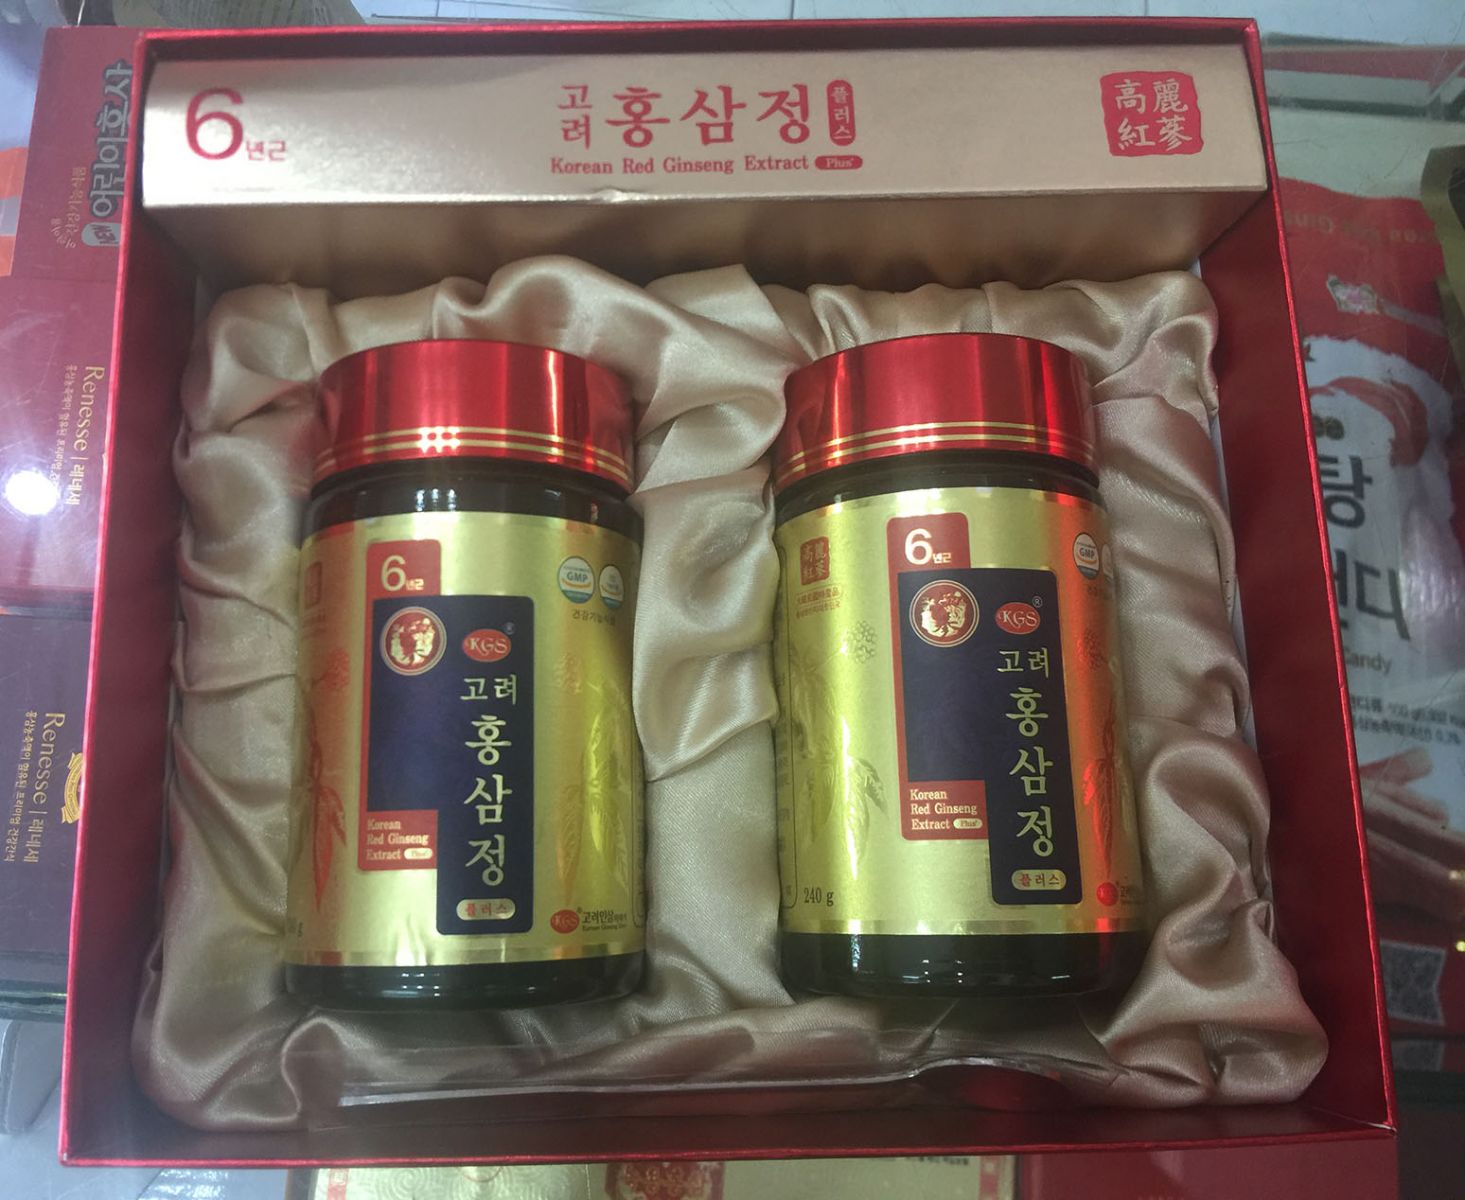 Cao hồng sâm 6 năm tuổi KGS Hàn Quốc hộp 2 lọ x 240g